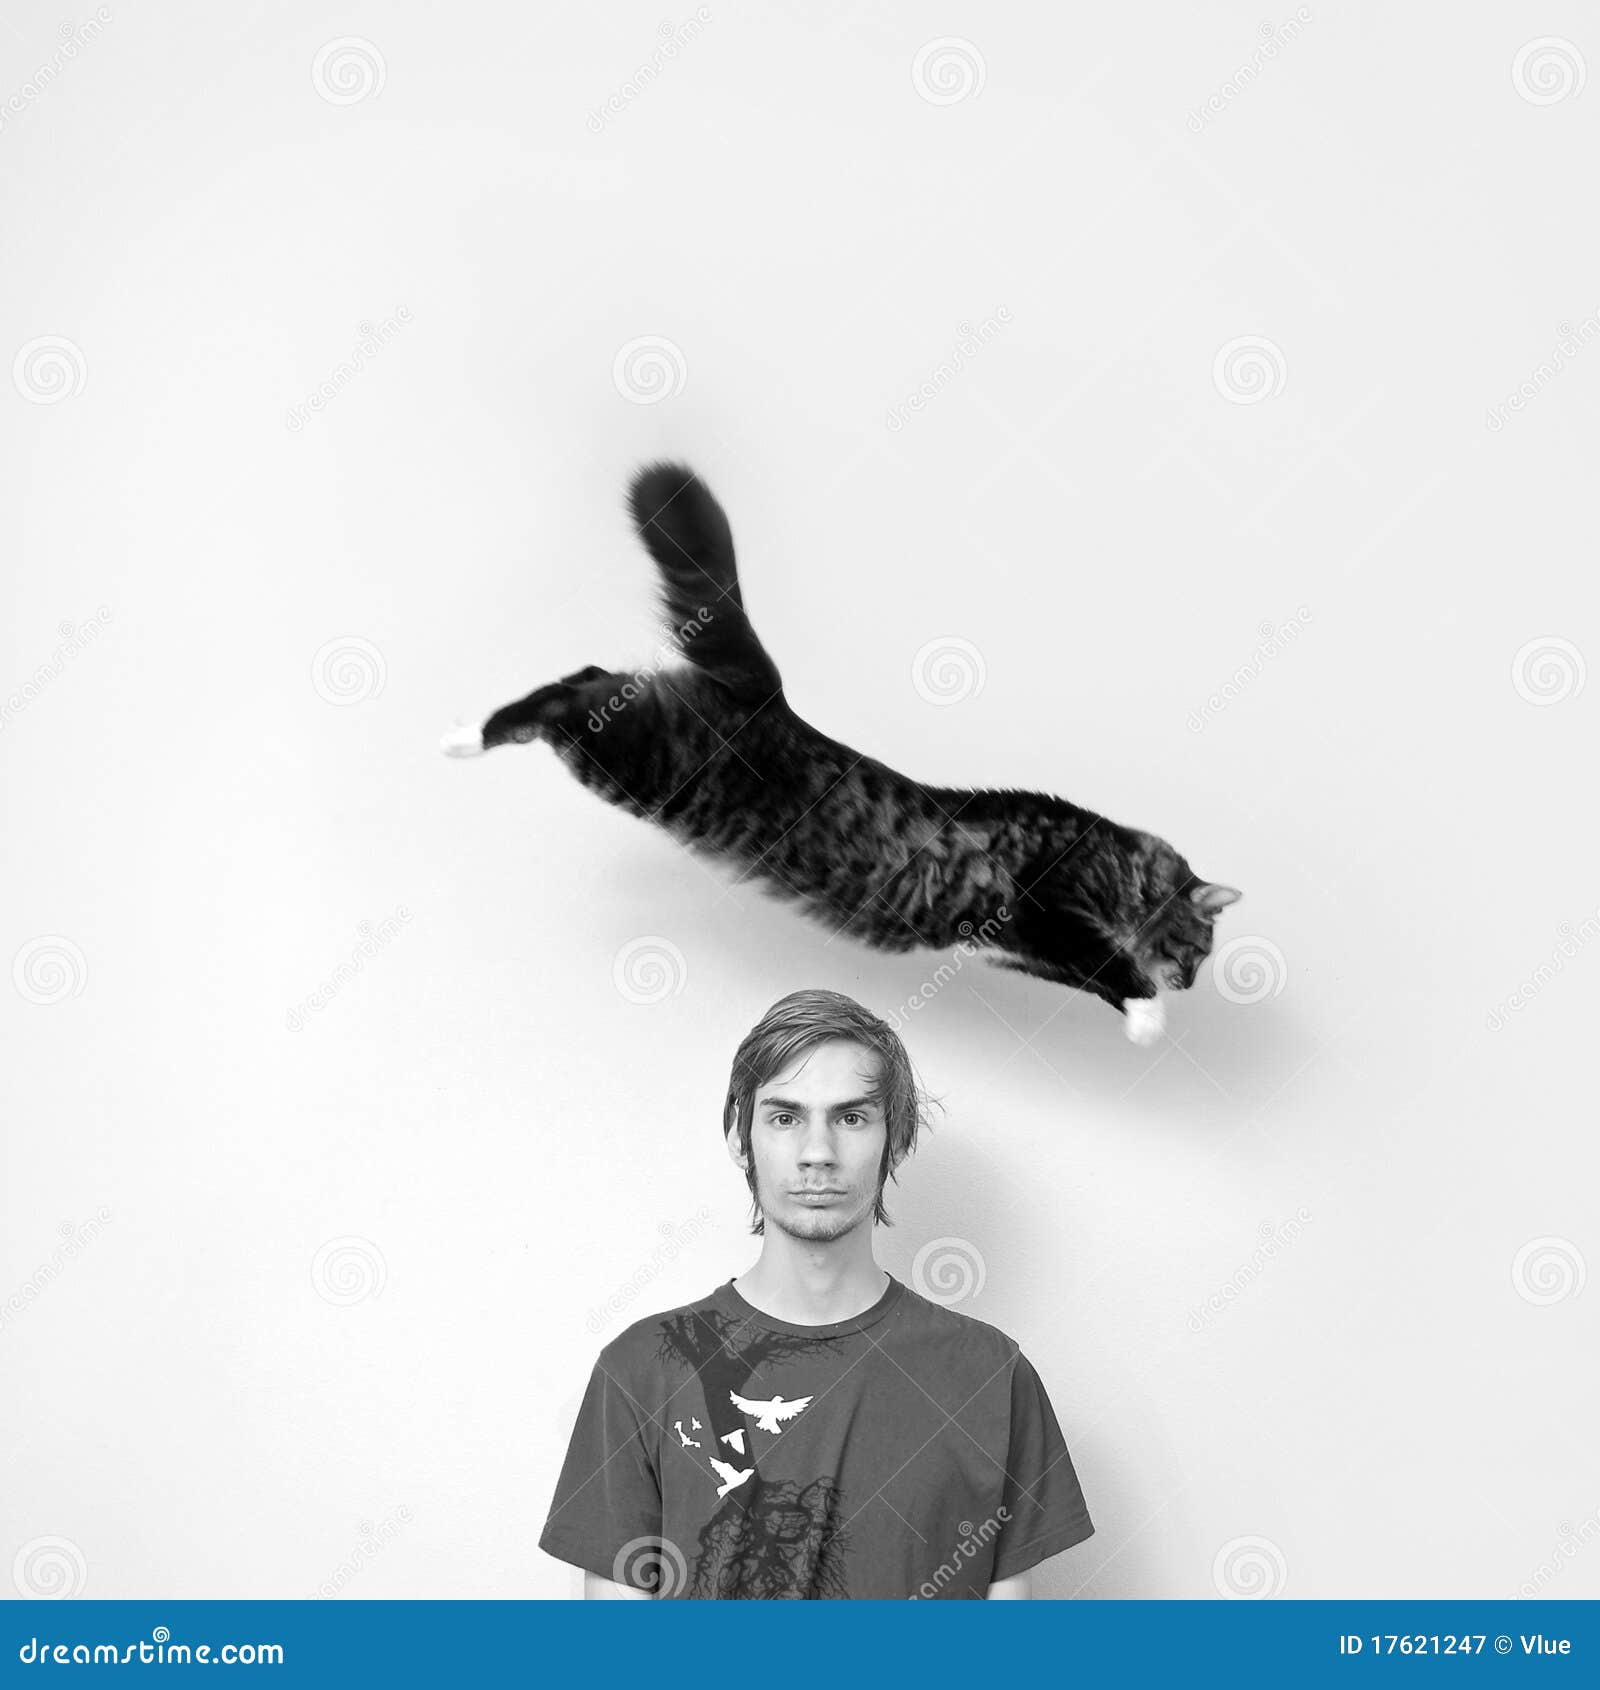 cat-jumping-over-man-s-head-17621247.jpg